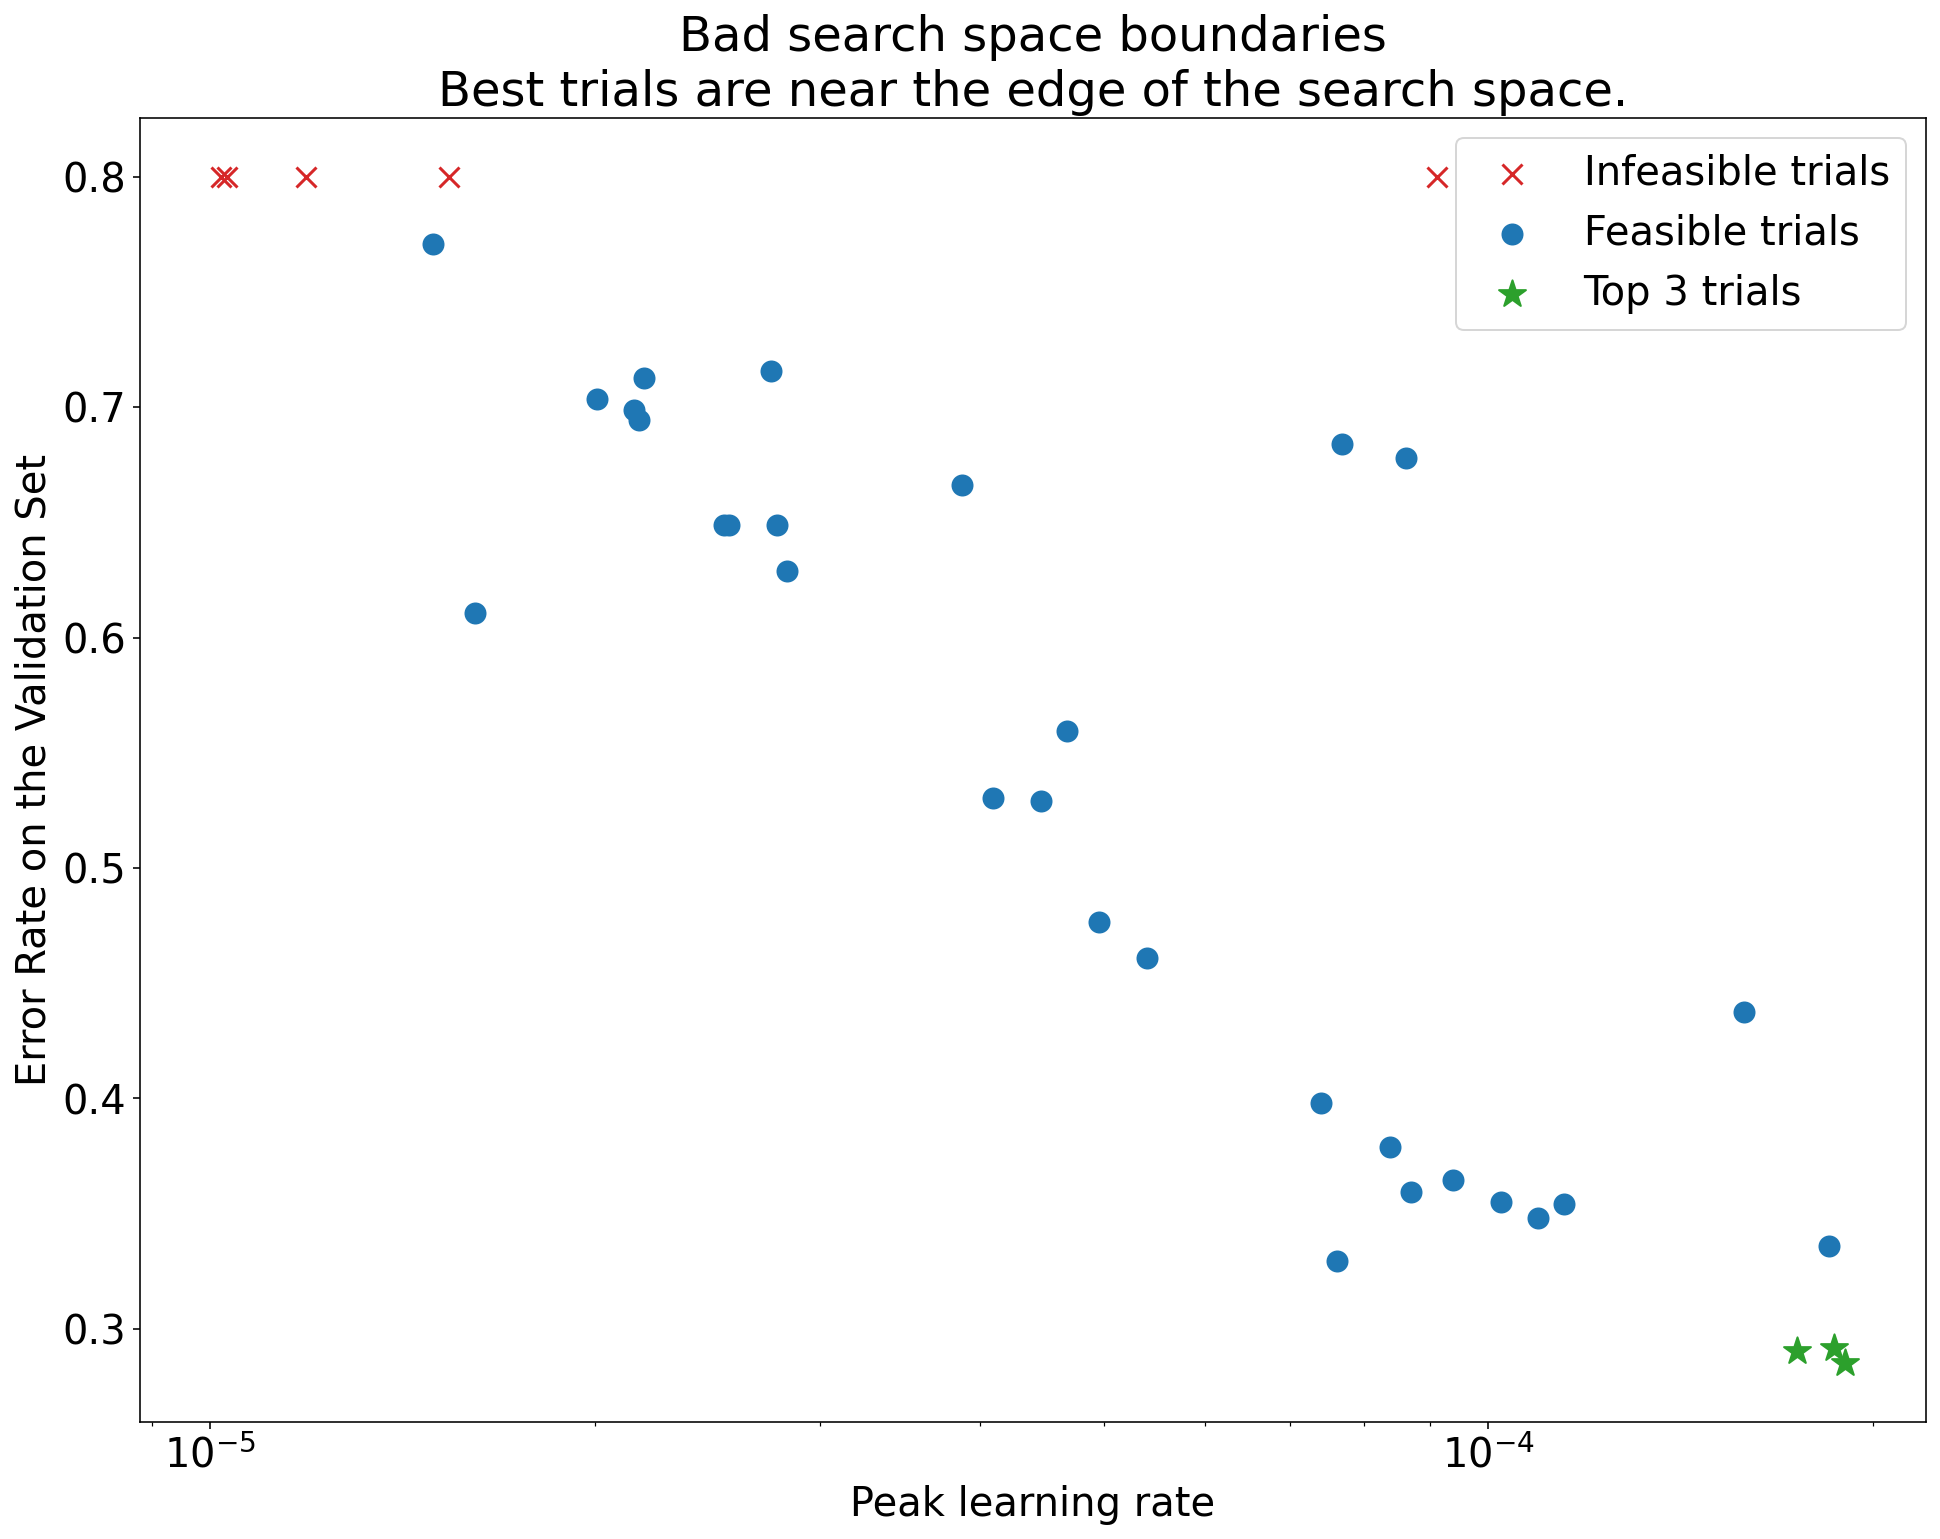 Biểu đồ Tỷ lệ lỗi trên bộ xác thực (trục y) so với Tốc độ học tập cao nhất (trục x) cho thấy ranh giới không gian tìm kiếm không tốt. Trong biểu đồ này, các thử nghiệm tốt nhất (tỷ lệ lỗi thấp nhất) nằm gần cạnh của không gian tìm kiếm, nơi có tỷ lệ học tập cao nhất.